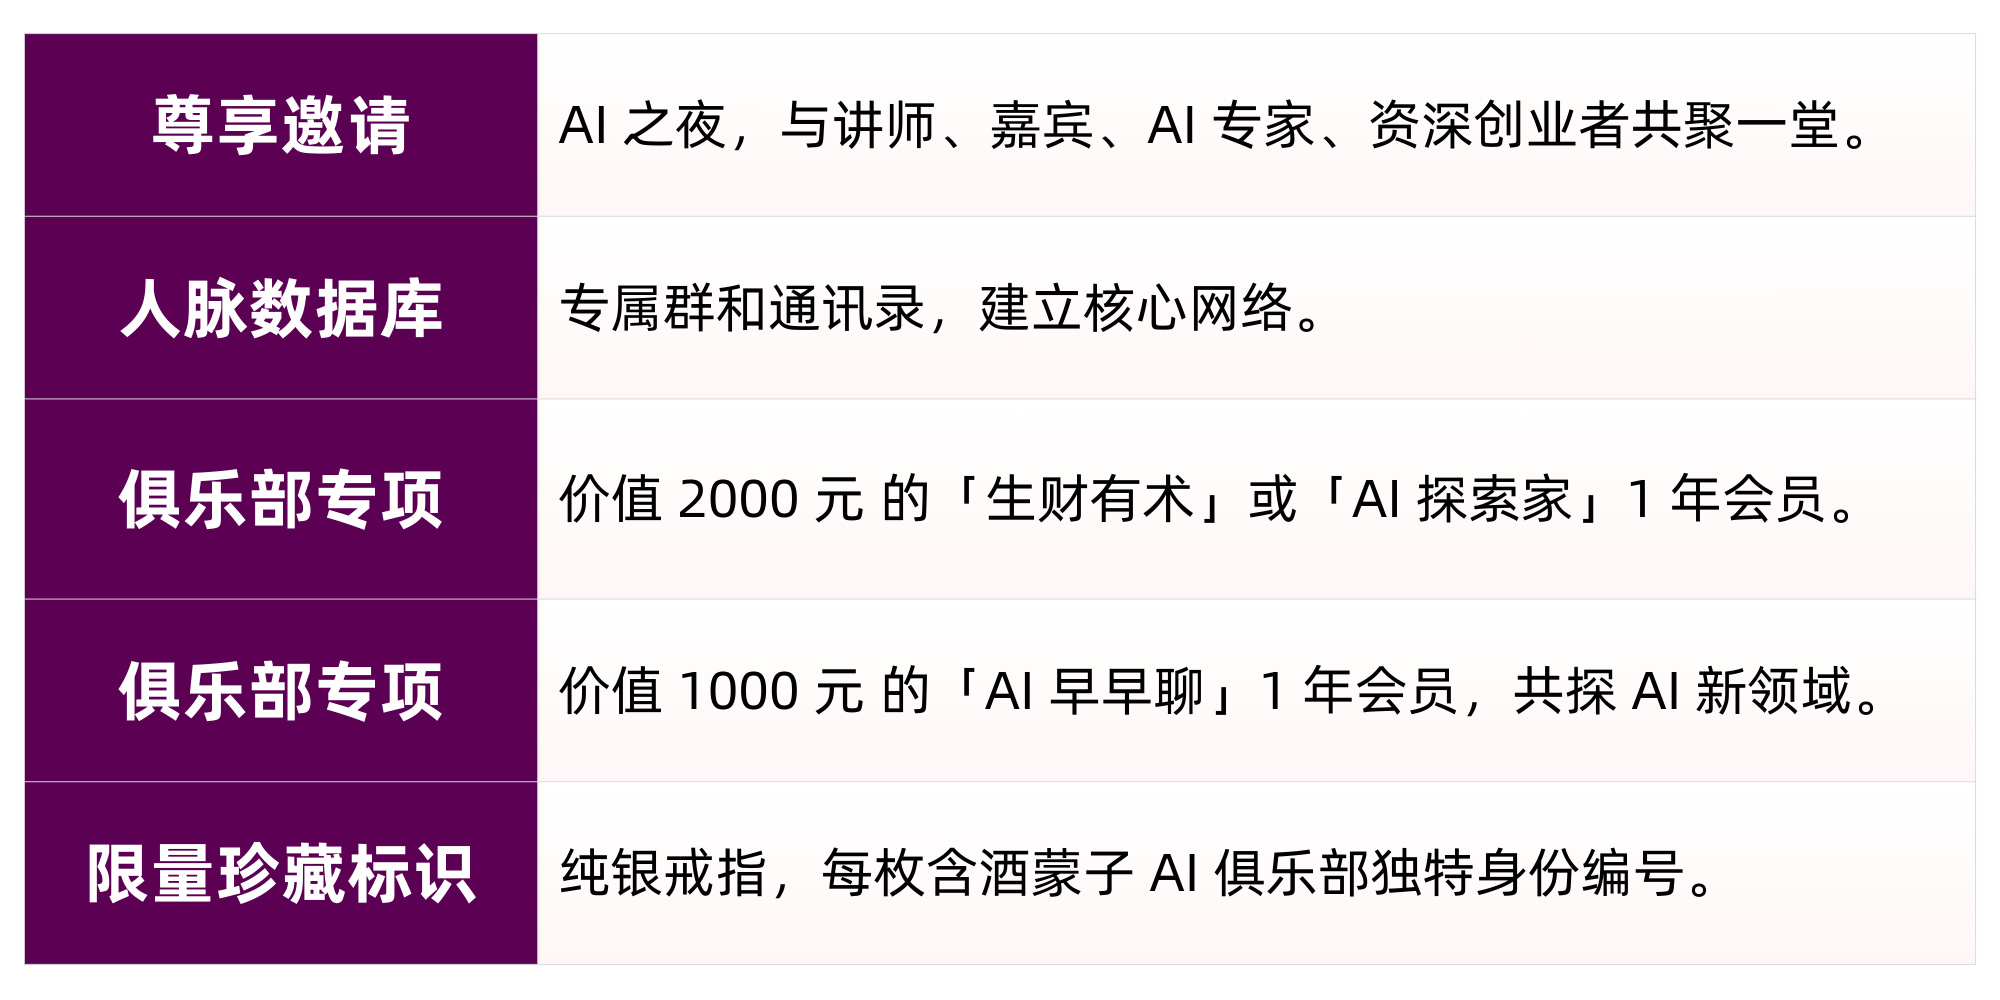 【杭州 AI 峰会】AI 最后一公里 - 变现探索_人工智能_16